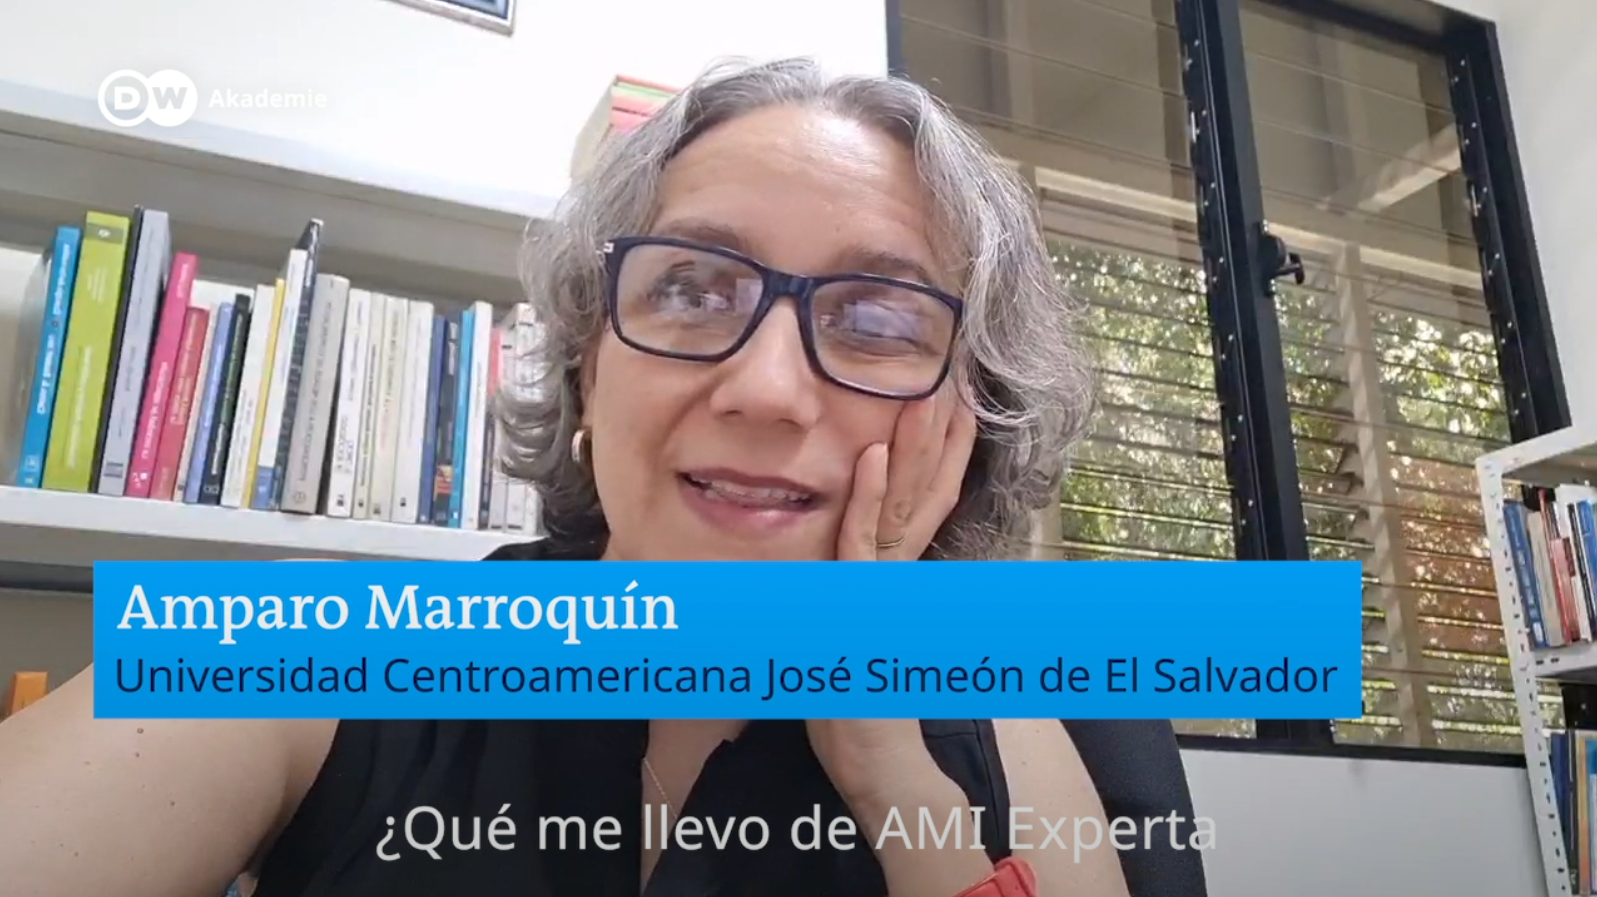 Amparo Marroquín - Universidad Centroamericana José Simeón de El Salvador